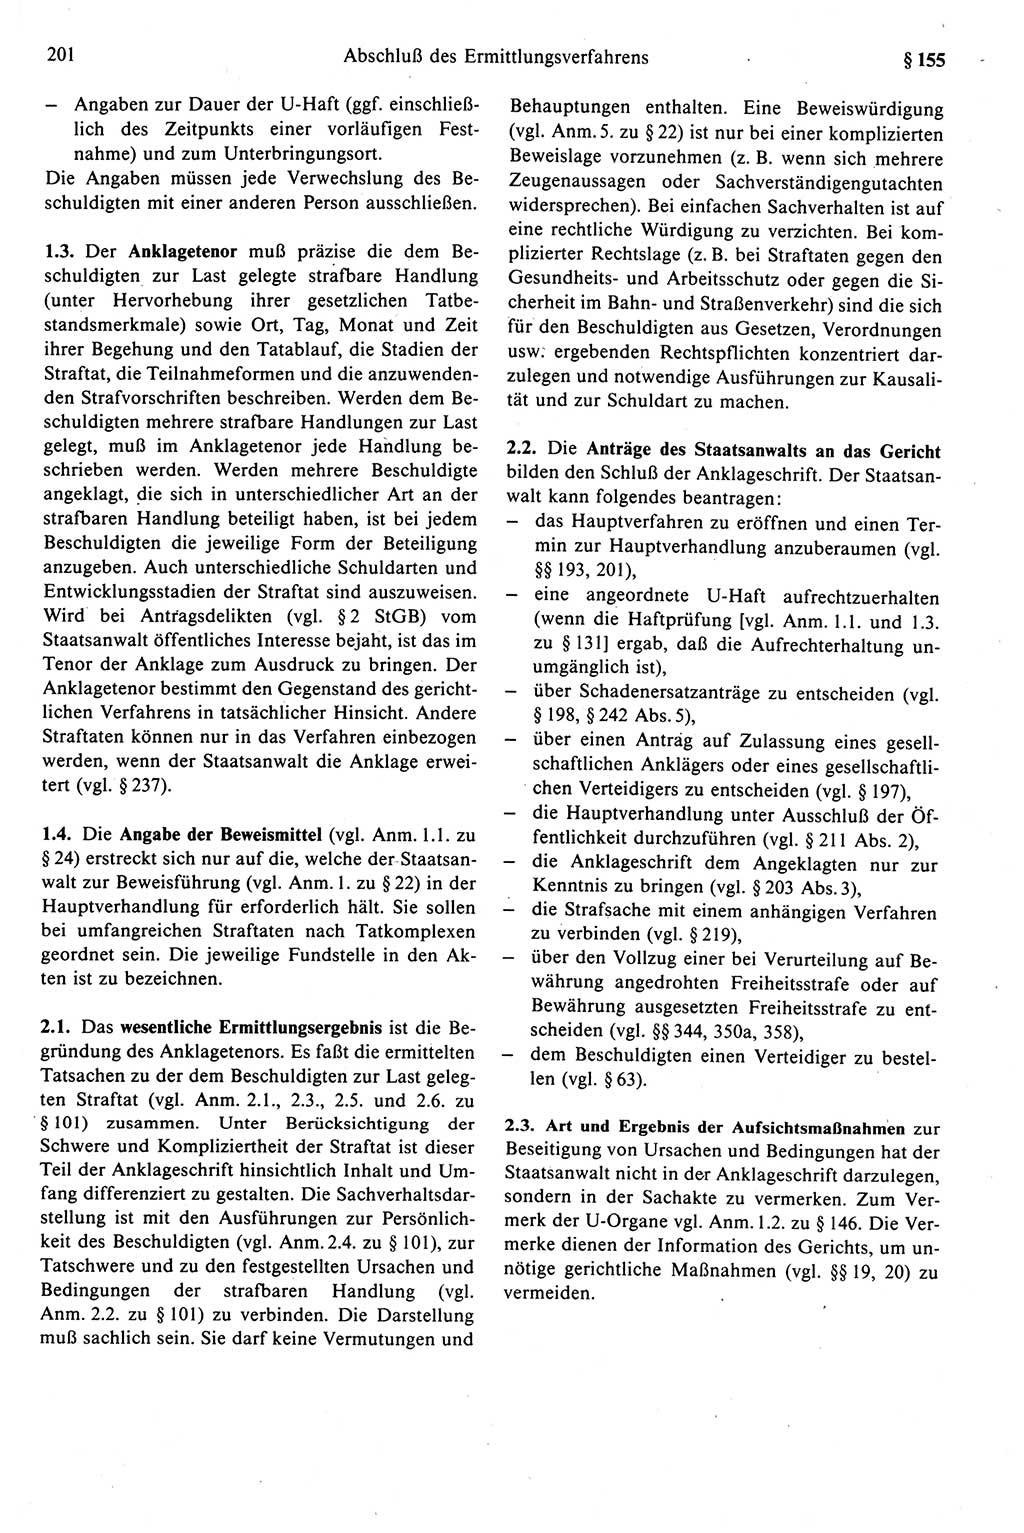 Strafprozeßrecht der DDR (Deutsche Demokratische Republik), Kommentar zur Strafprozeßordnung (StPO) 1989, Seite 201 (Strafprozeßr. DDR Komm. StPO 1989, S. 201)